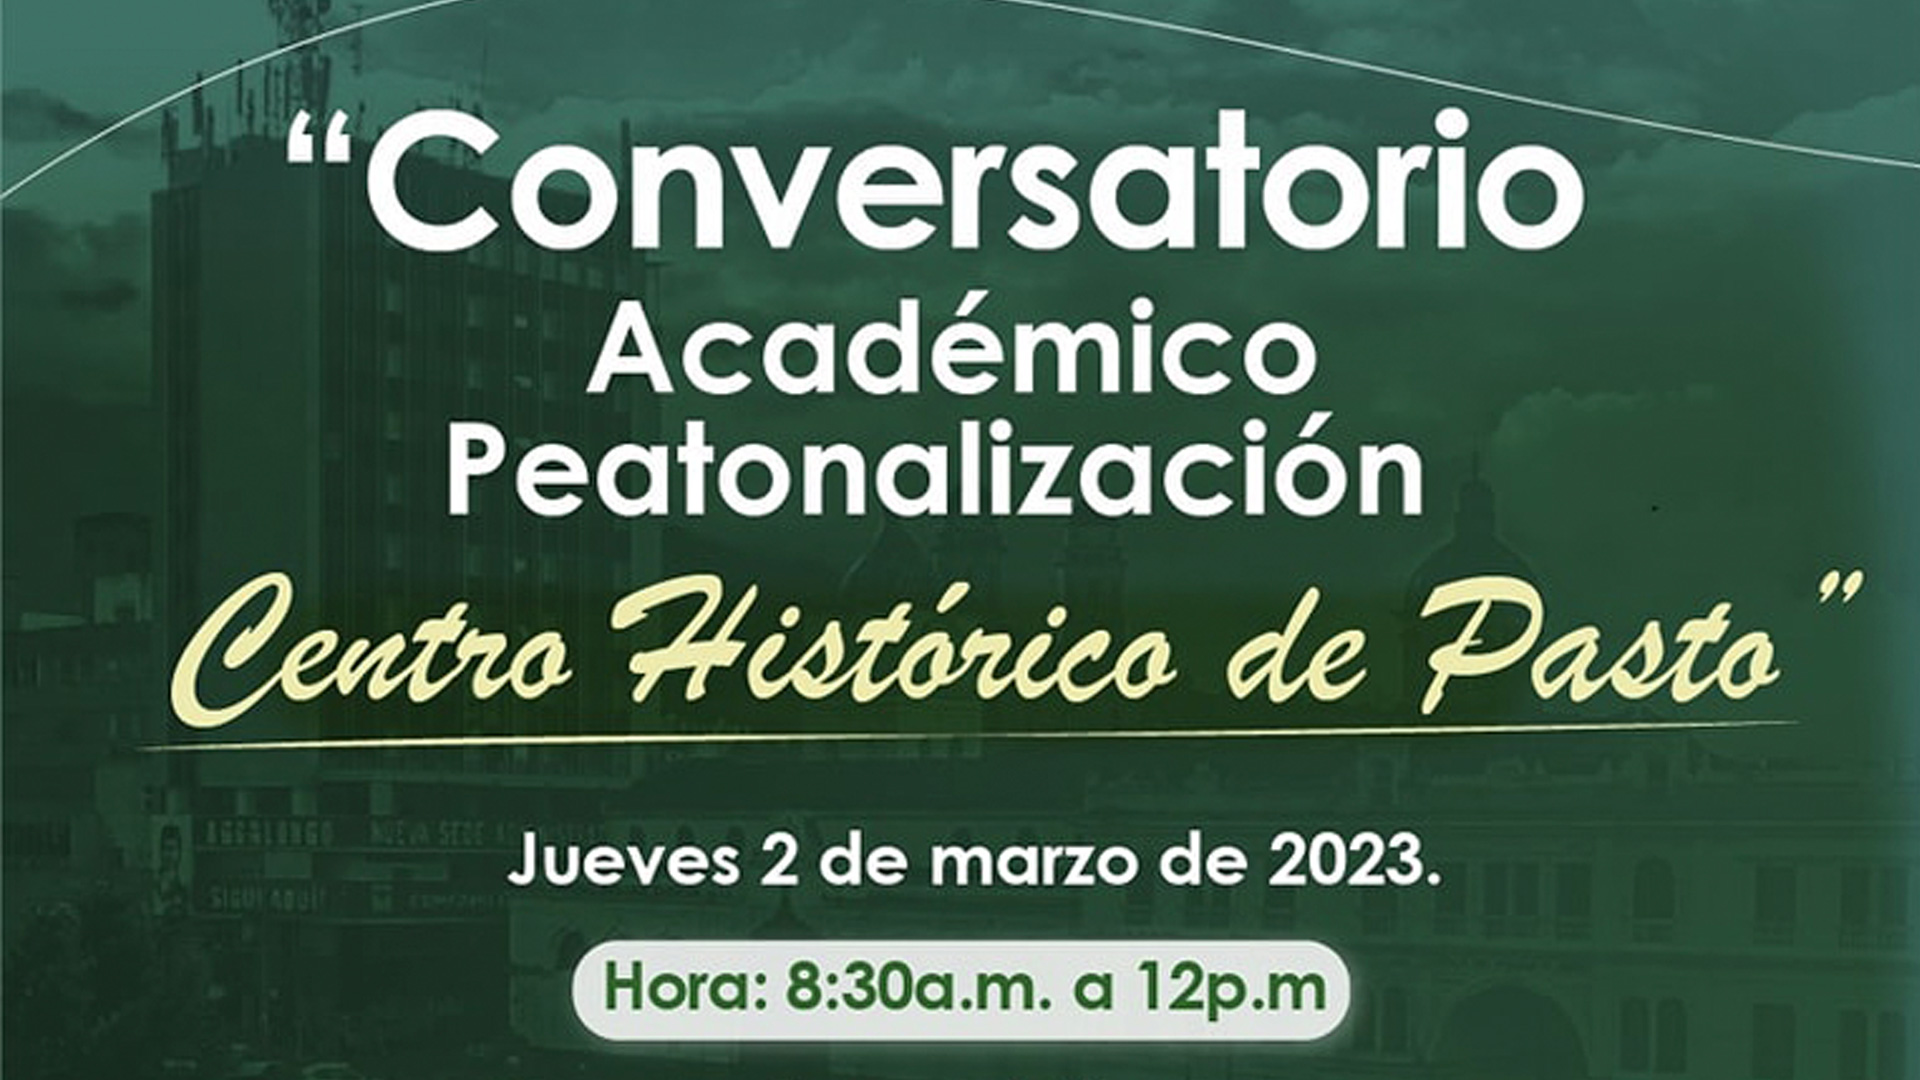 Conversatorio Peatonalización del Centro Histórico de Pasto